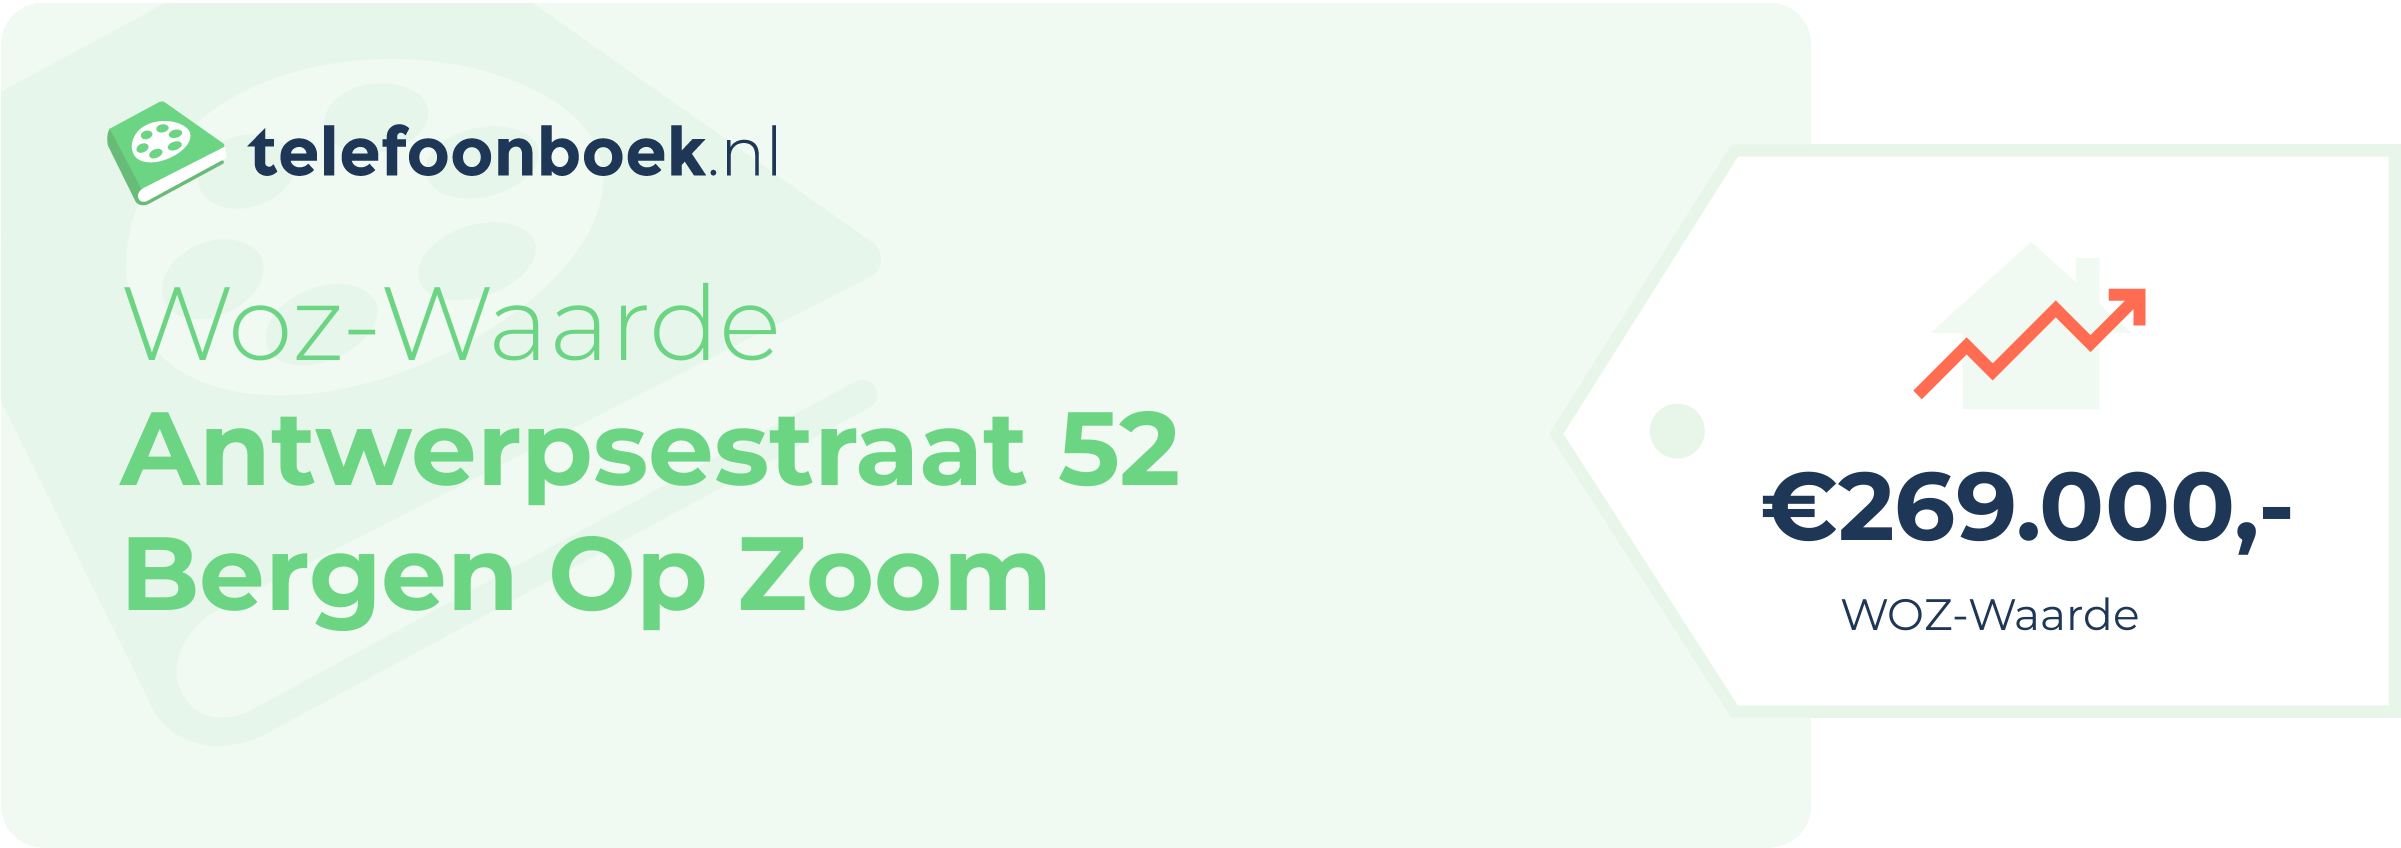 WOZ-waarde Antwerpsestraat 52 Bergen Op Zoom